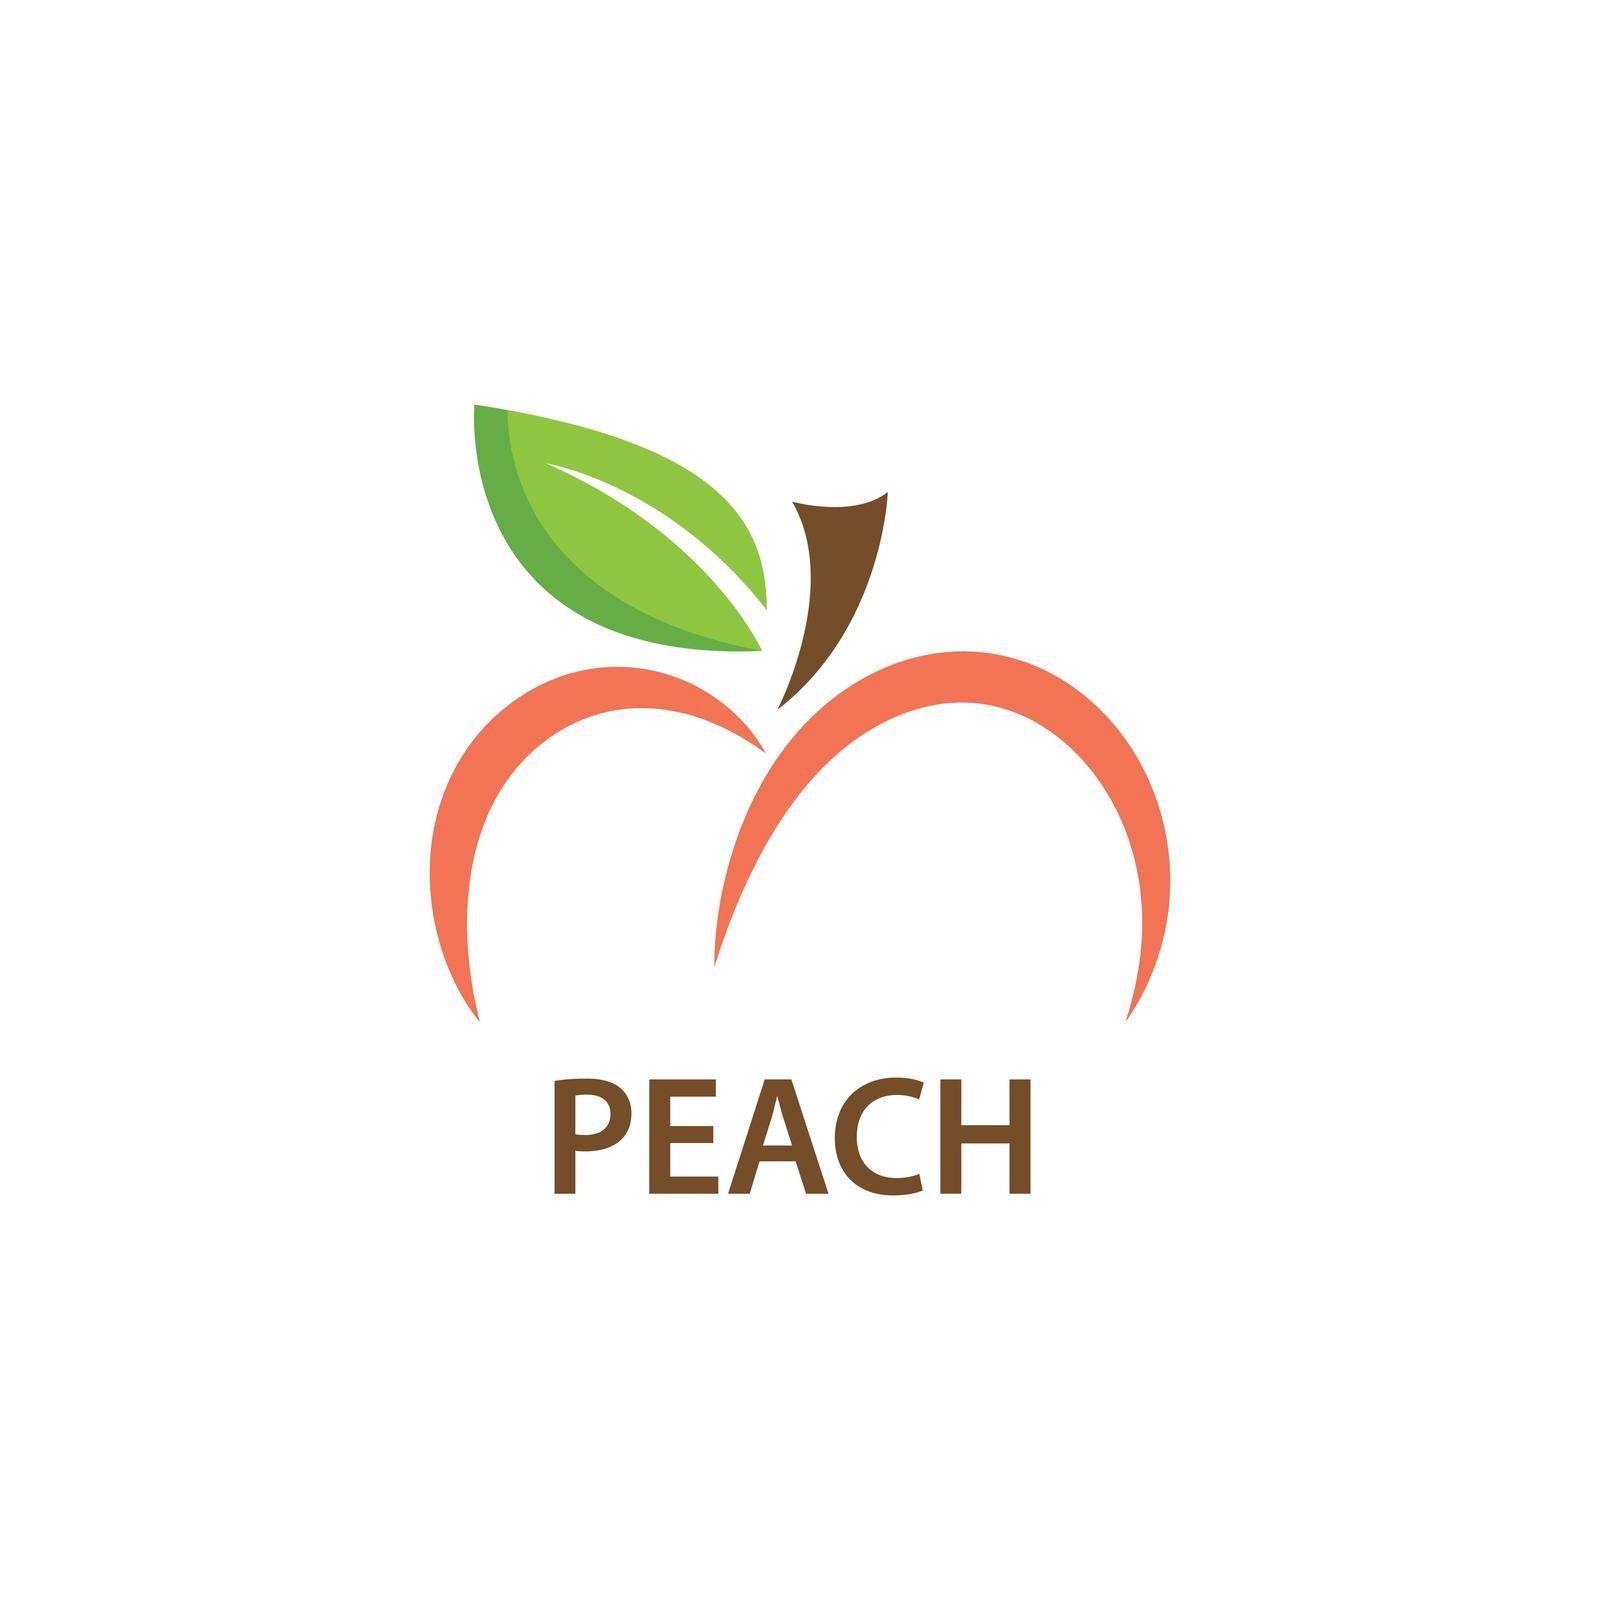 Peach fruit by awk